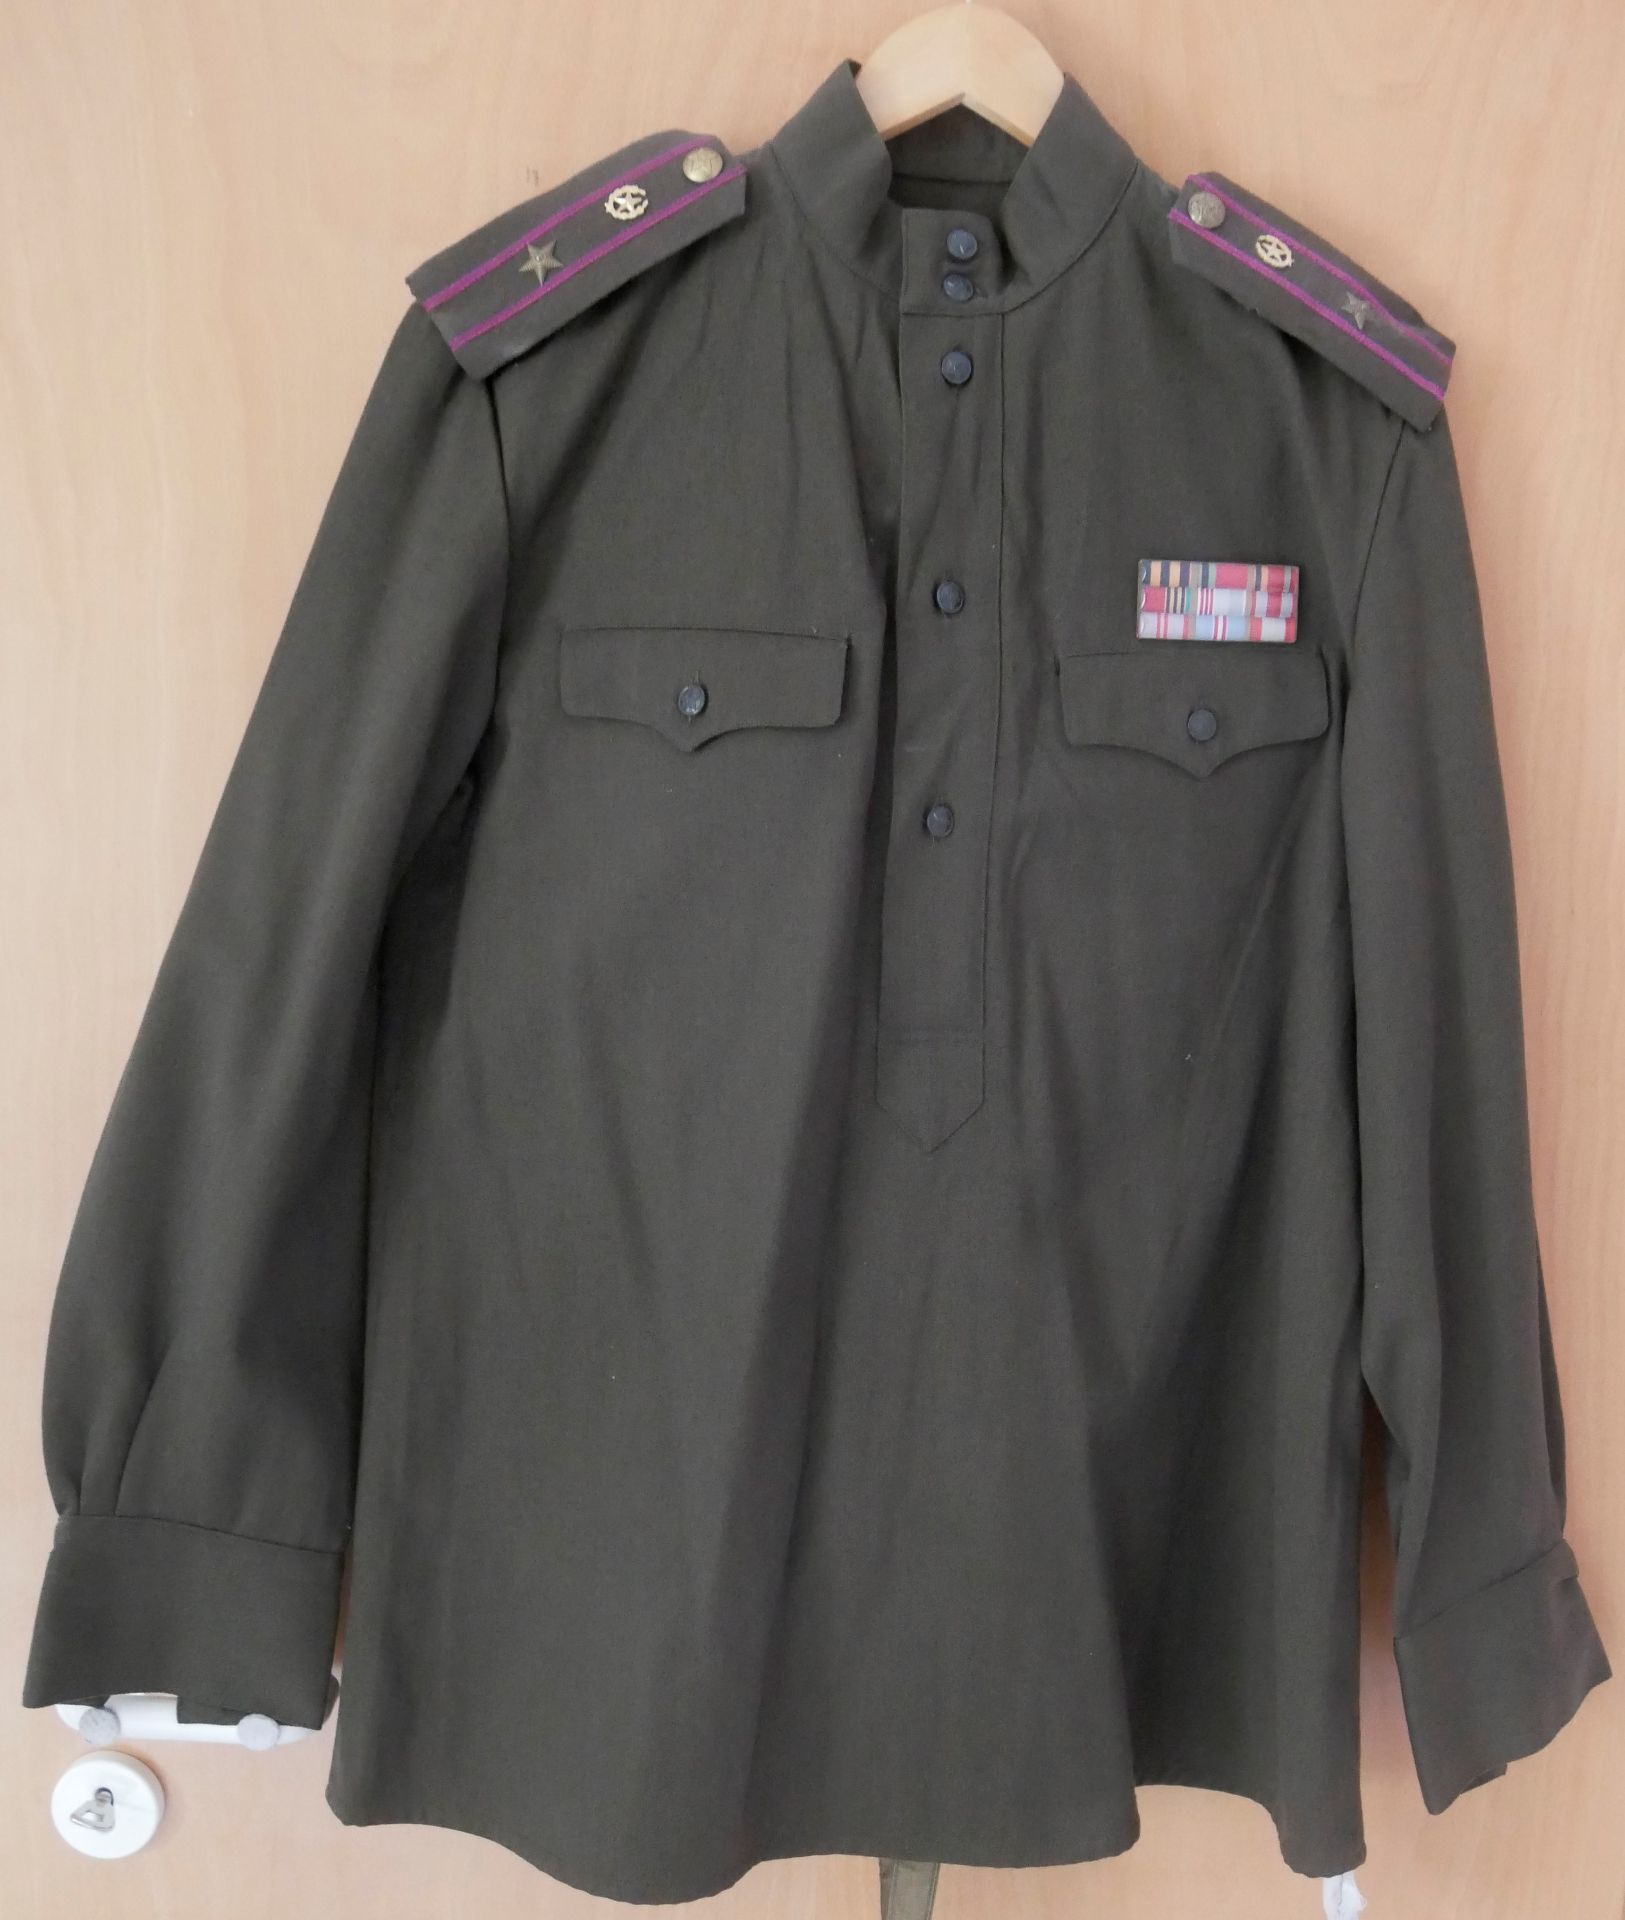 Aus Sammelauflösung! UDSSR wohl Felduniform, Jacke mit Effekten und Ordensspange mit passender Hose.